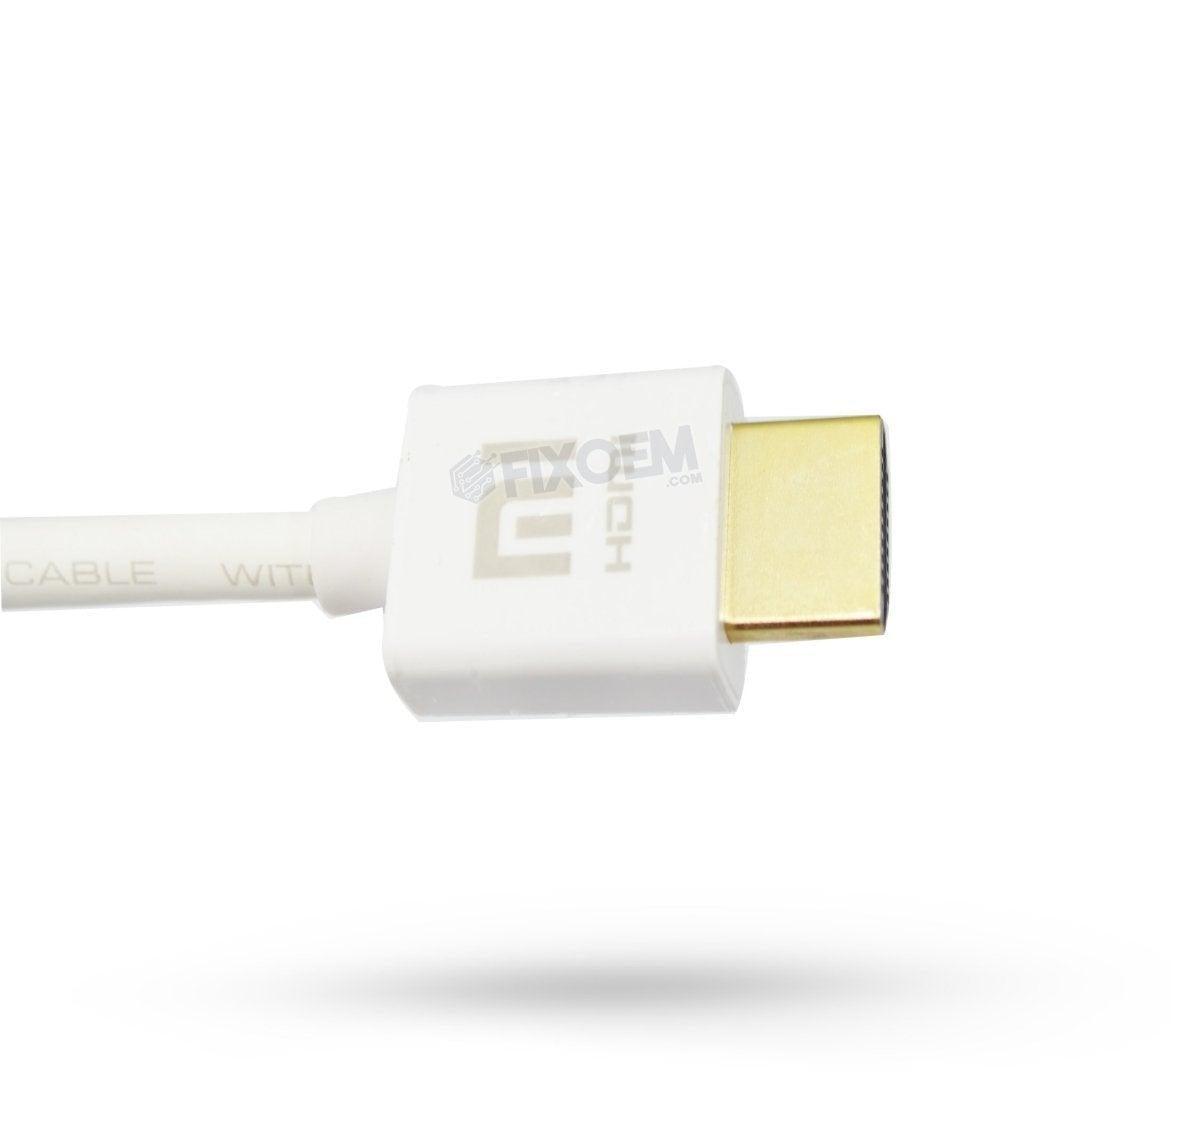 Cable Hdmi Xiaomi a solo $ 240.00 Refaccion y puestos celulares, refurbish y microelectronica.- FixOEM